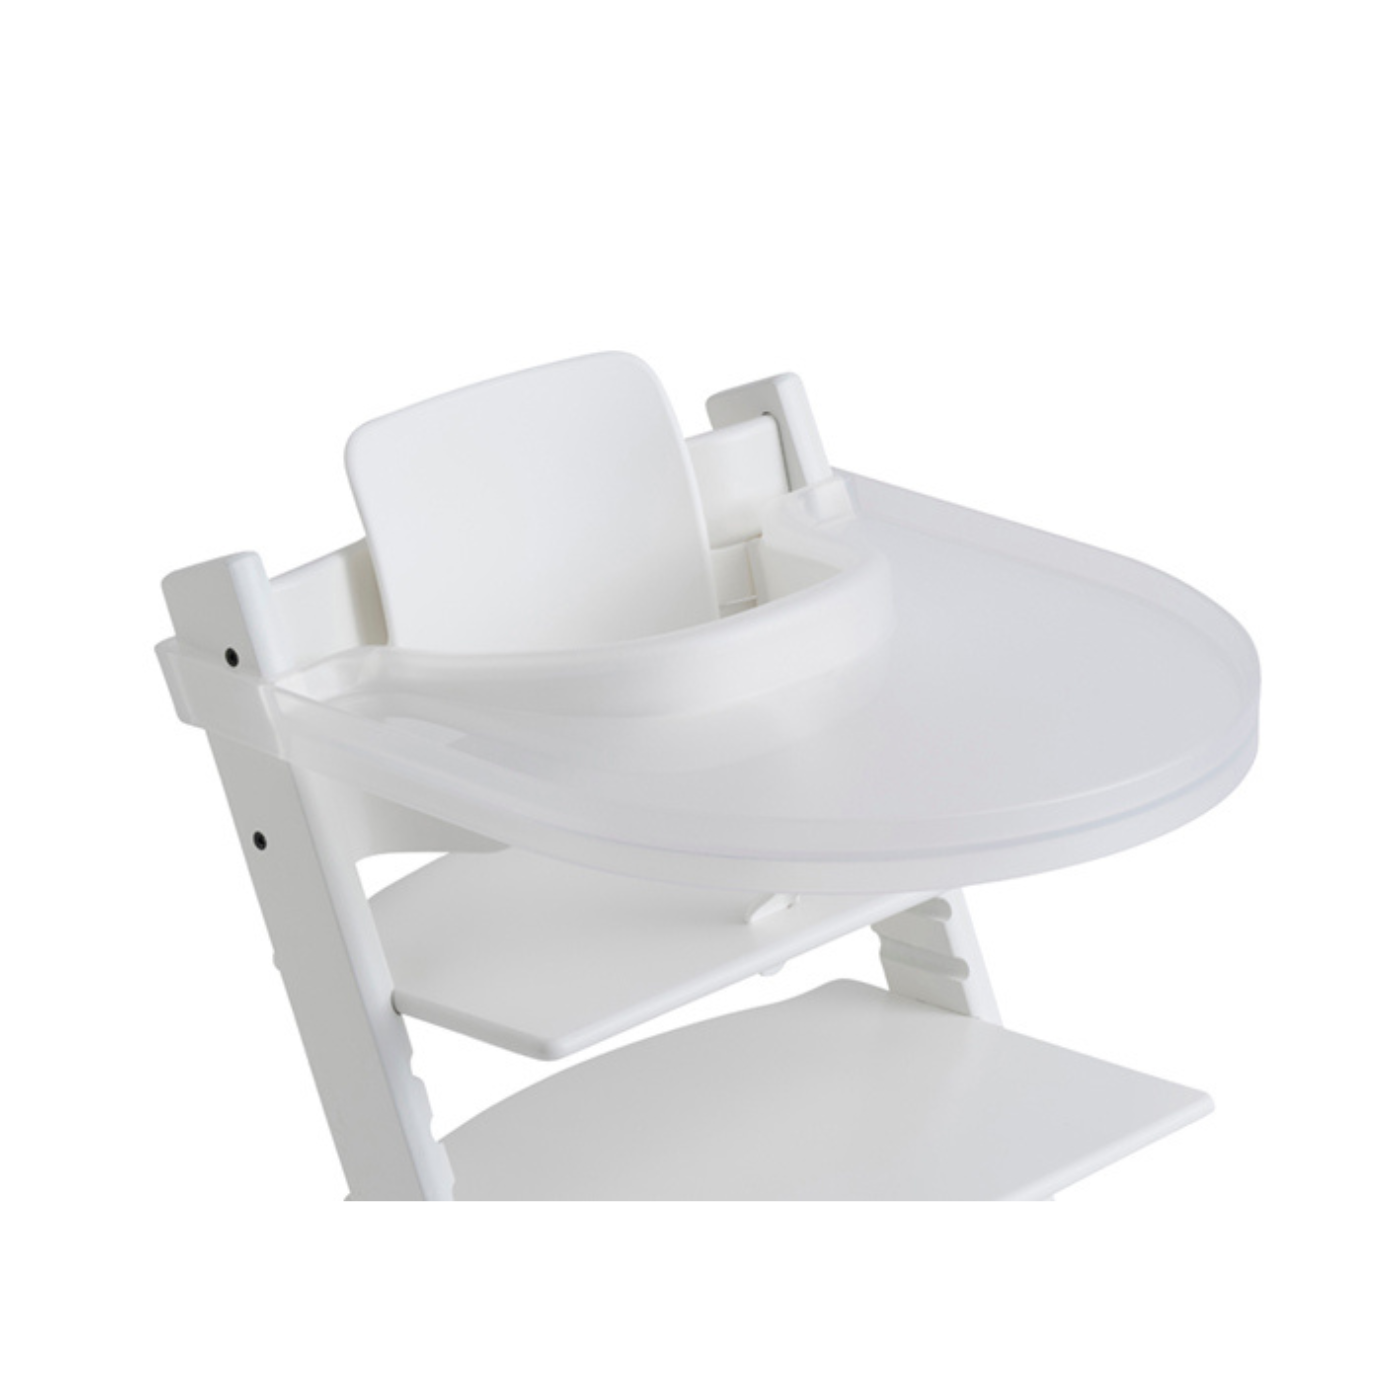 Bandeja para silla alta para bebé, compatible con silla Stokke Tripp Trapp  con superficie lisa y fuerte potencia de succión, fabricada con plástico